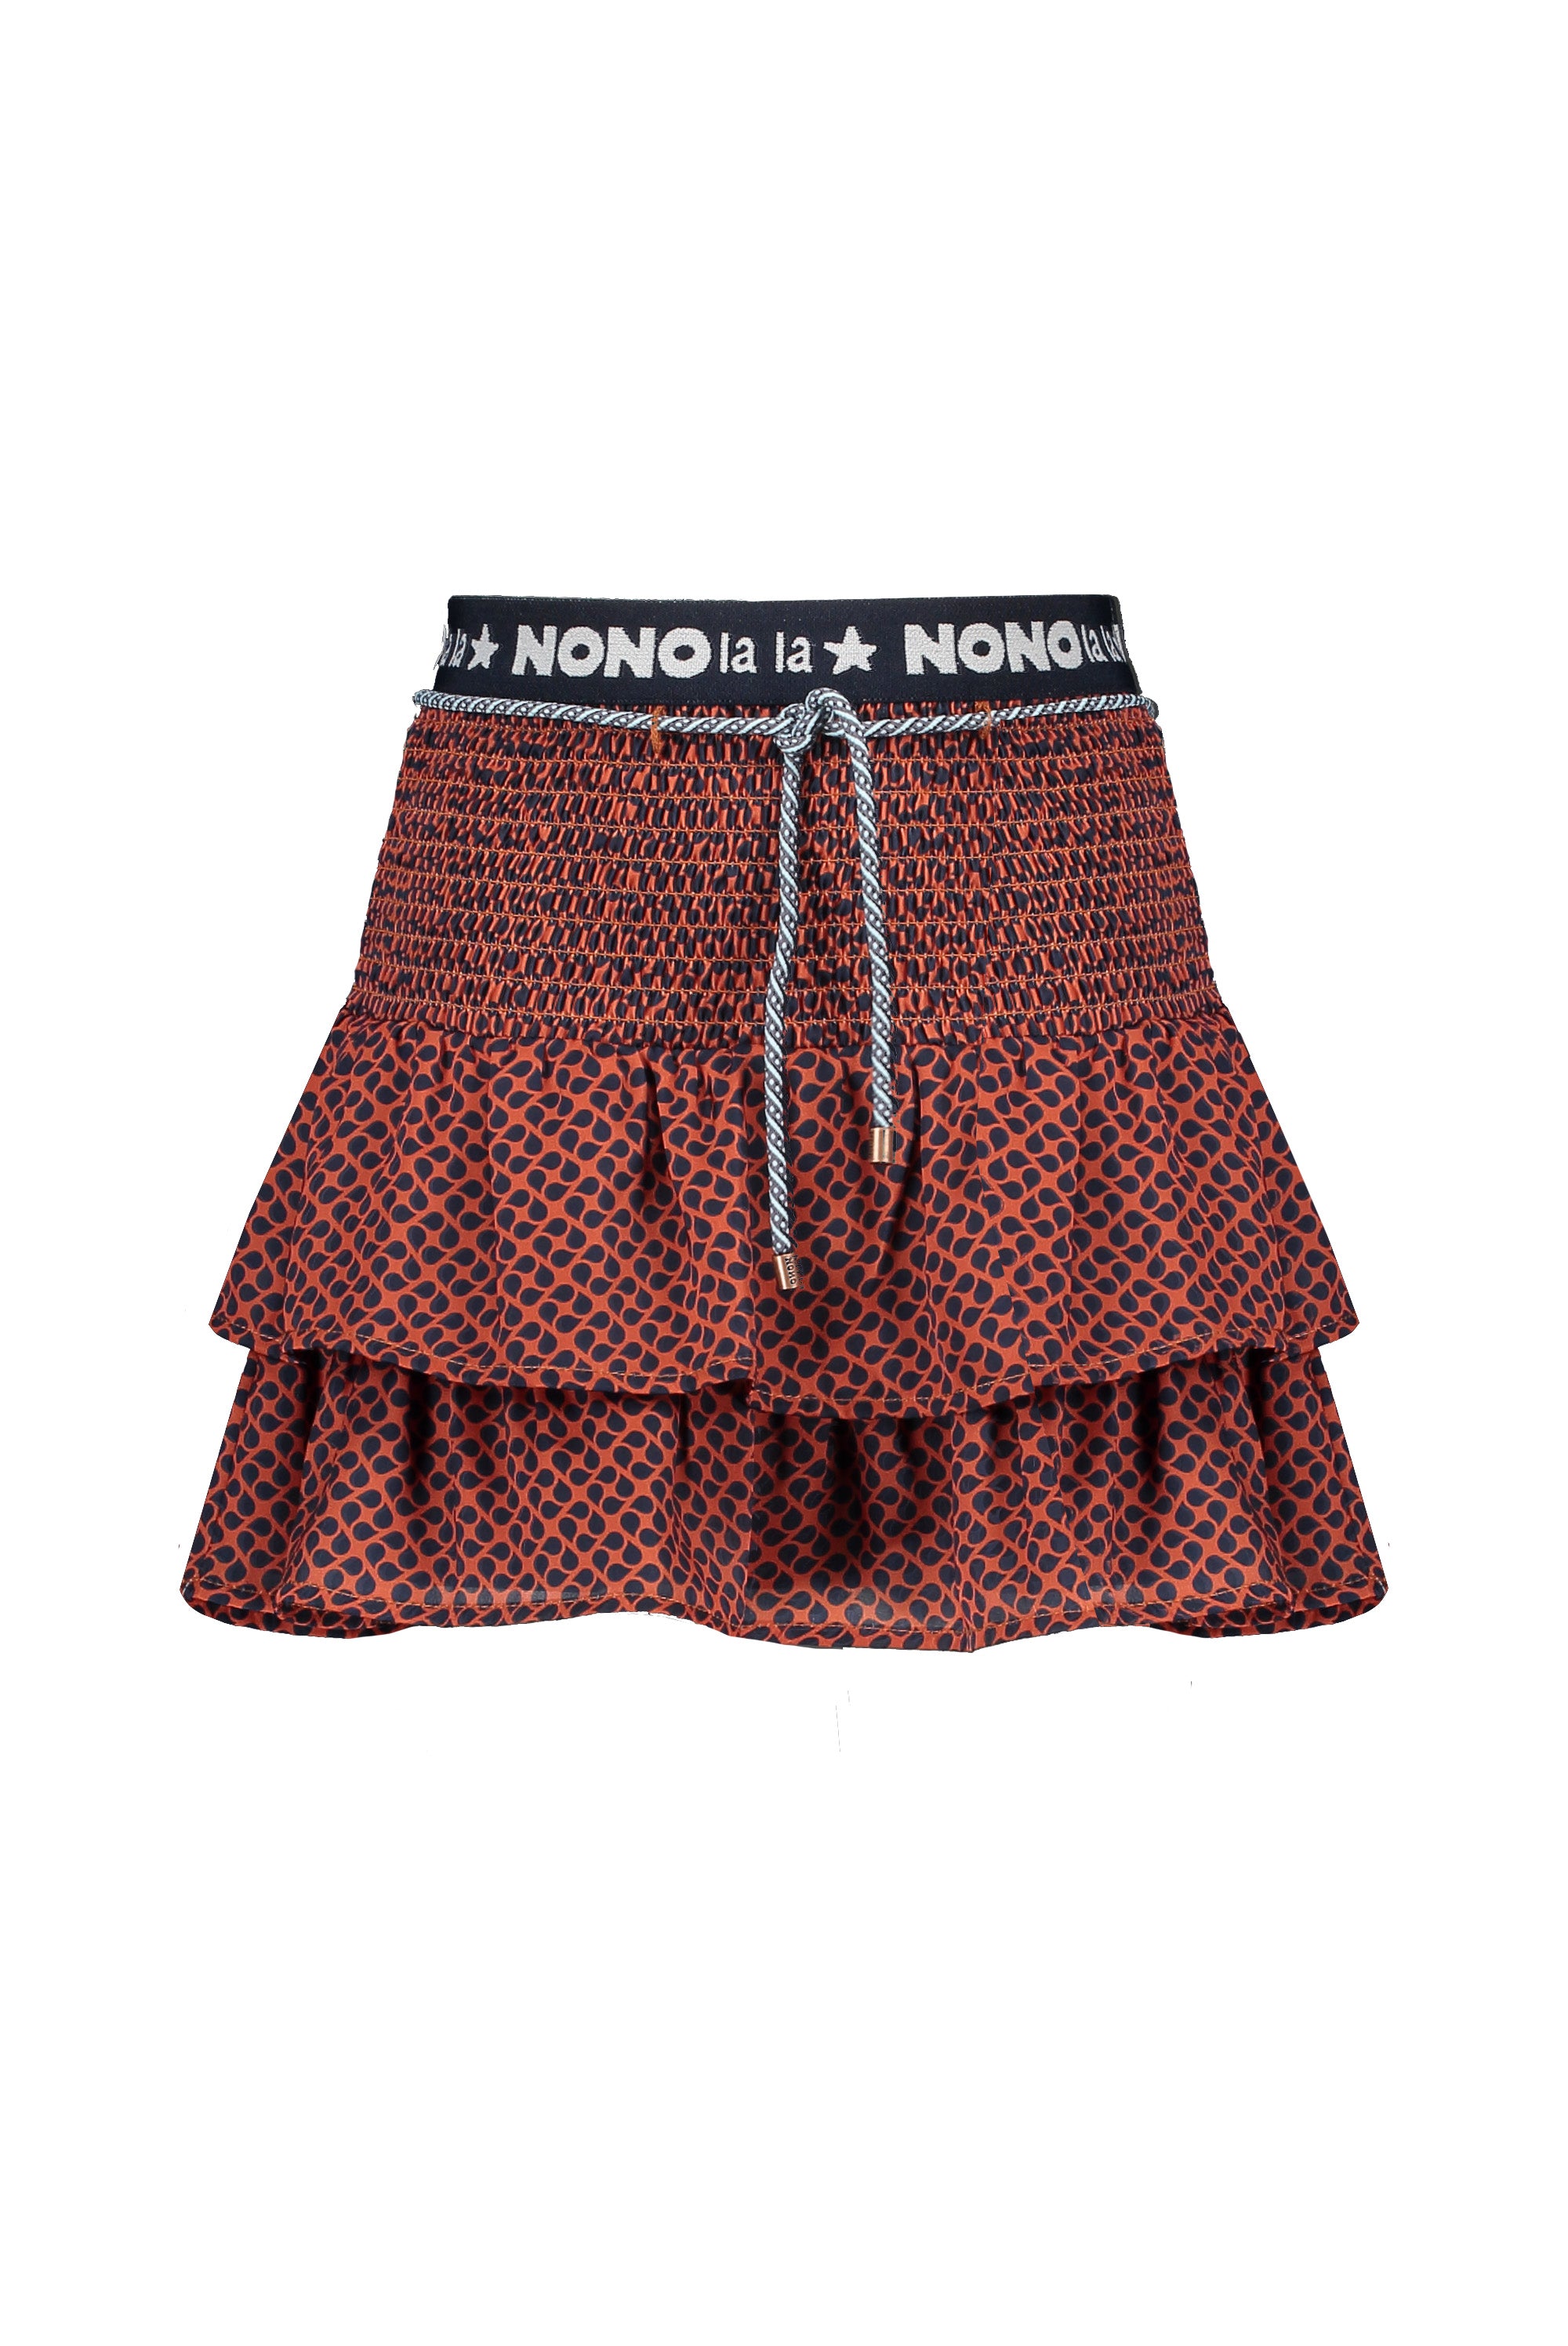 NoNo Norah 2 layered skirt + smocked waist